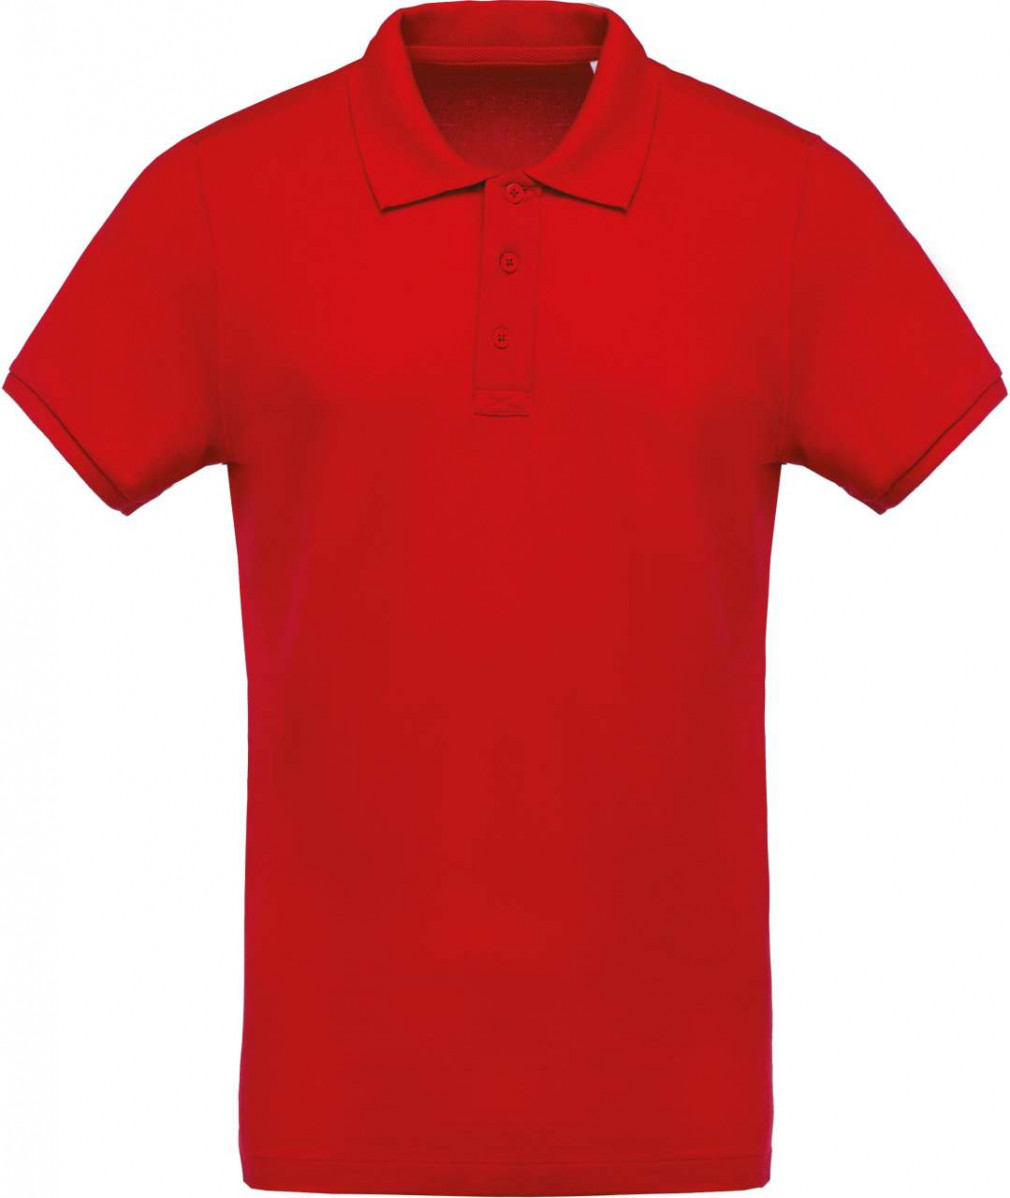 Férfi póló Kariban KA209 Men'S Organic piqué Short-Sleeved polo Shirt -L, Red